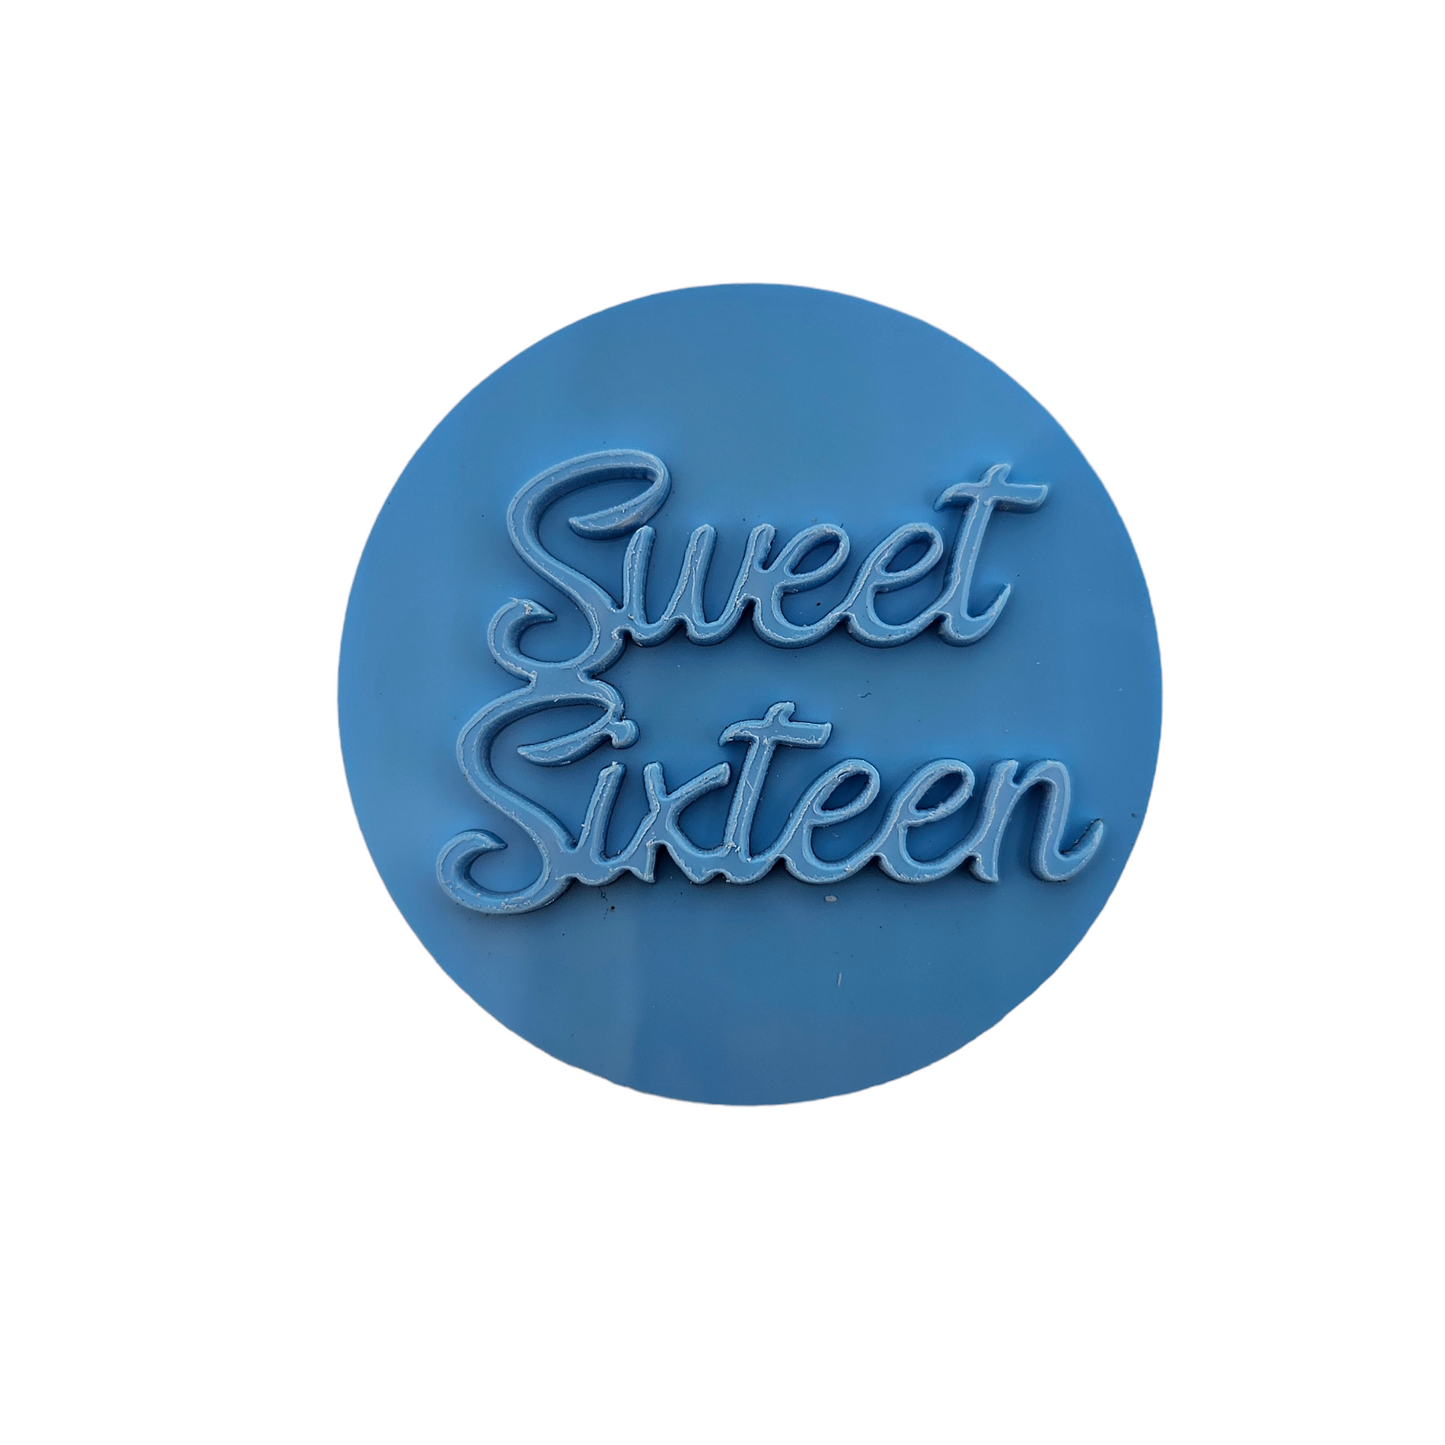 Sweet Sixteen - Embosser Stamp